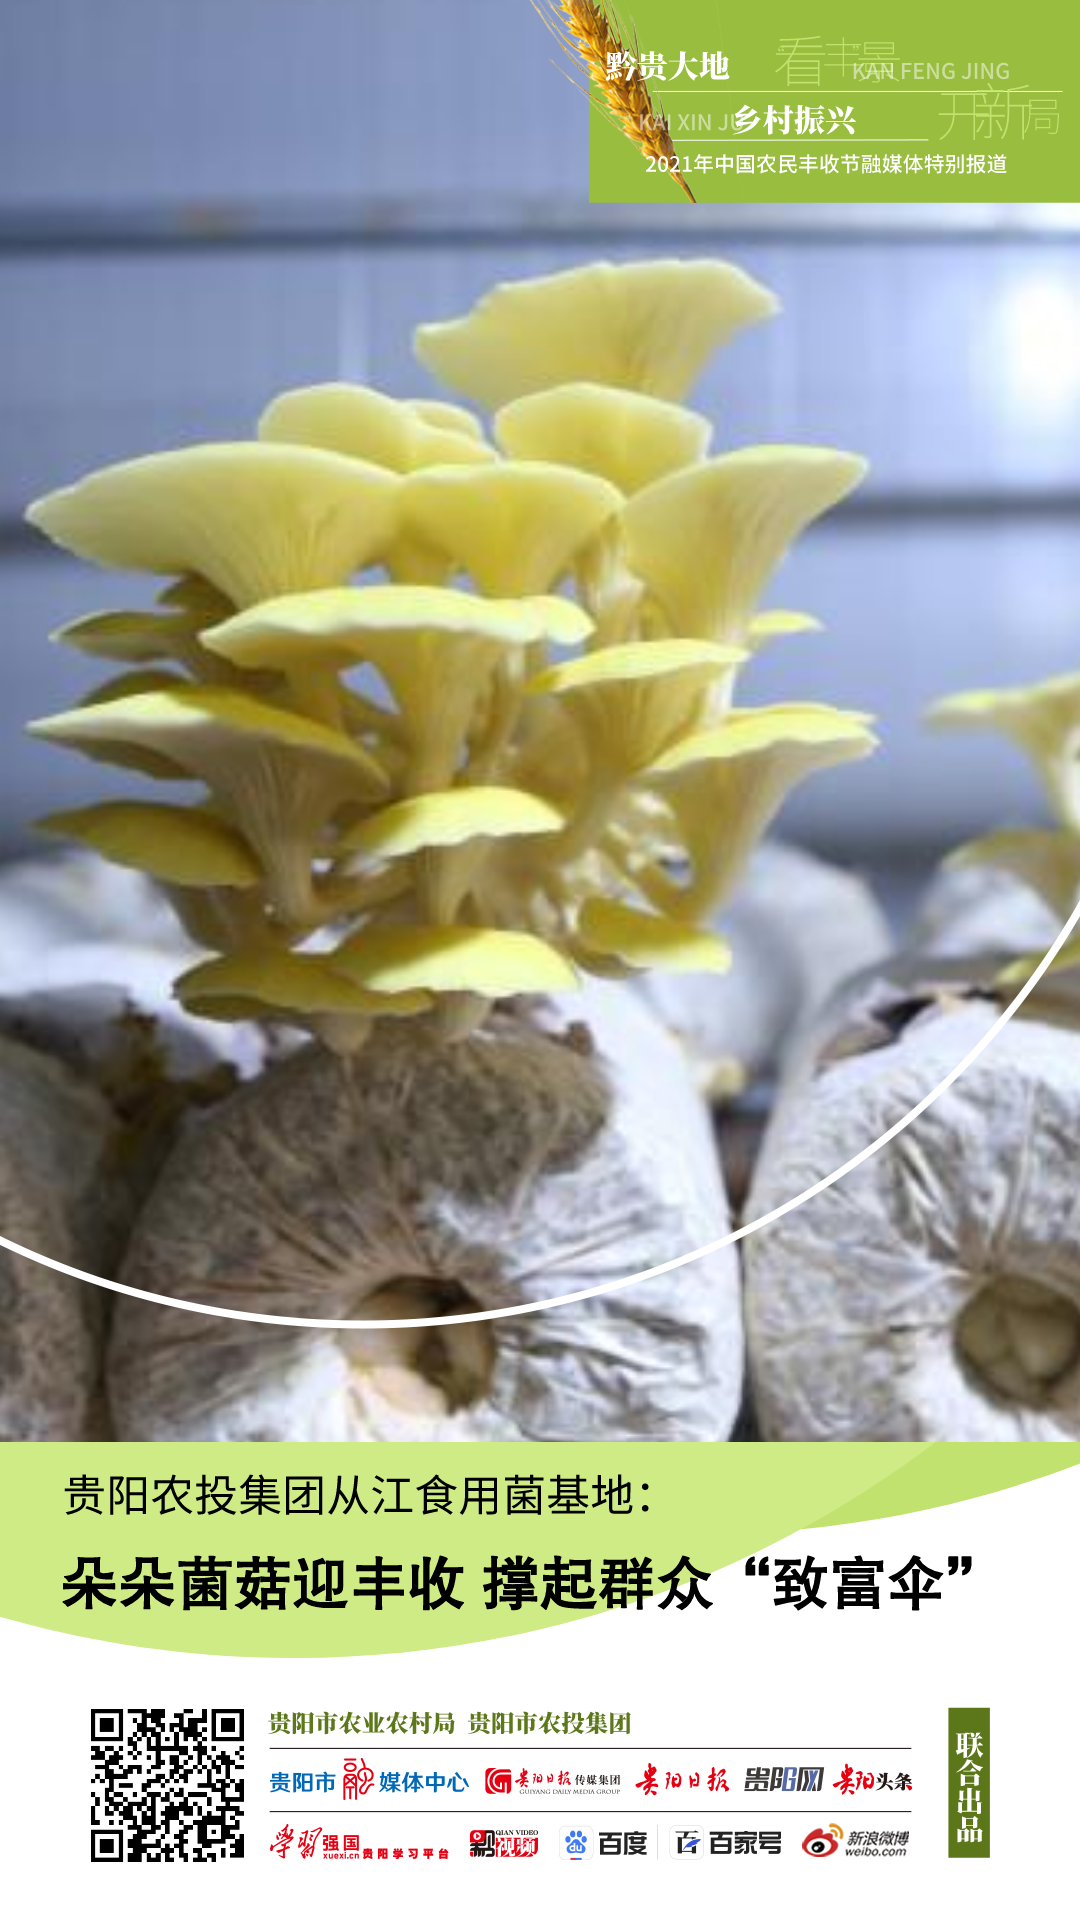 贵阳农投集团从江食用菌基地：朵朵菌菇迎丰收 撑起群众“致富伞”